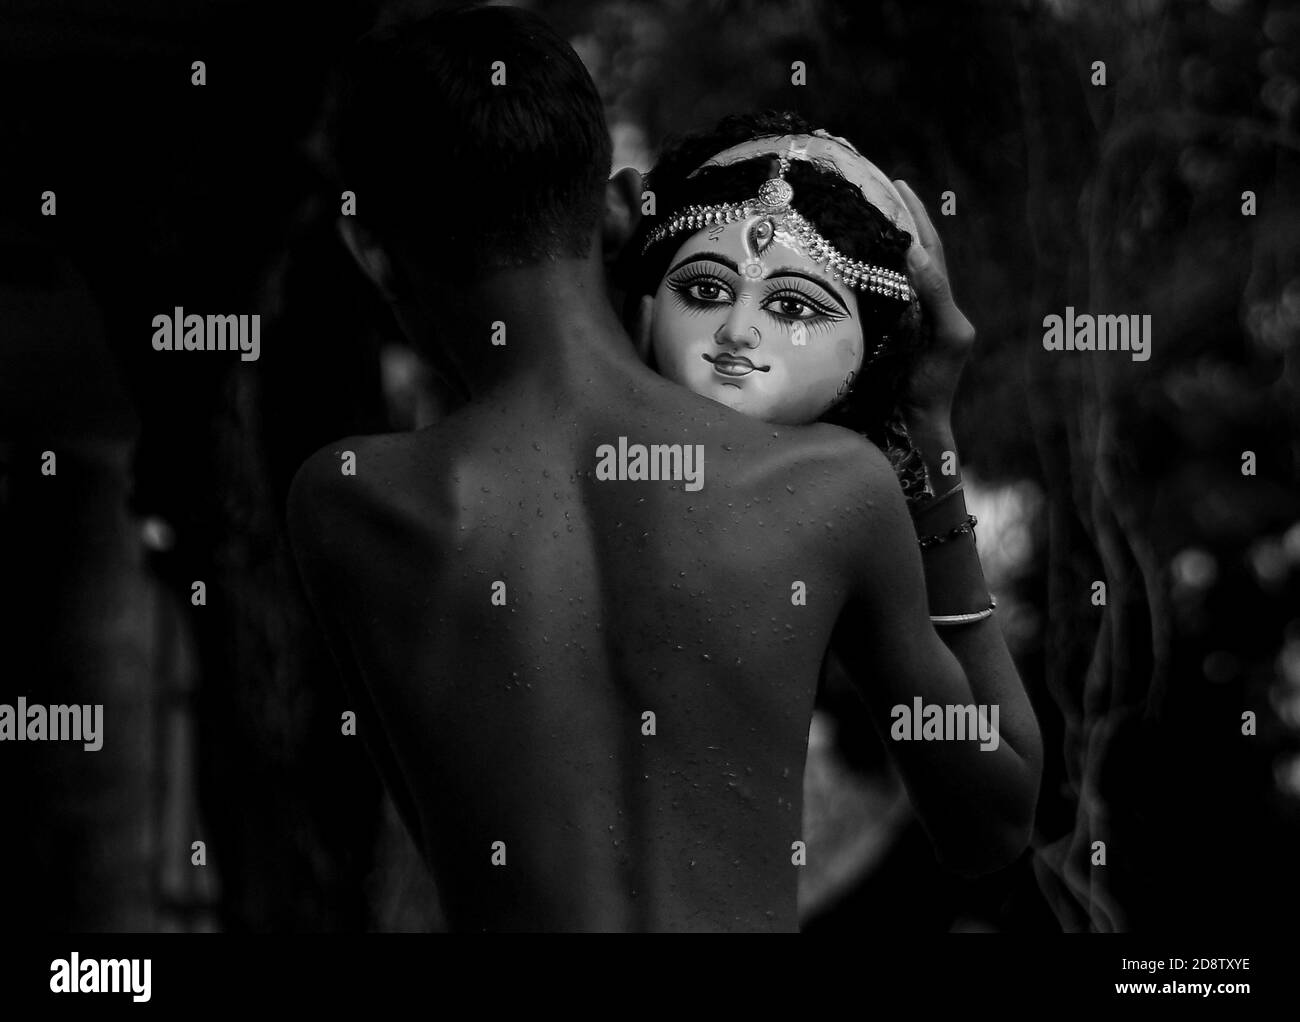 Un niño sostiene la cabeza de un ídolo de la diosa Durga durante una ceremonia de inmersión para Dashami, el último día del festival Durga Puja. El festival es el mayor evento religioso para los hindúes bengalíes. Los hindúes creen que la diosa Durga simboliza el poder y el triunfo del bien sobre el mal. Agartala, Tripura, India. Foto de stock